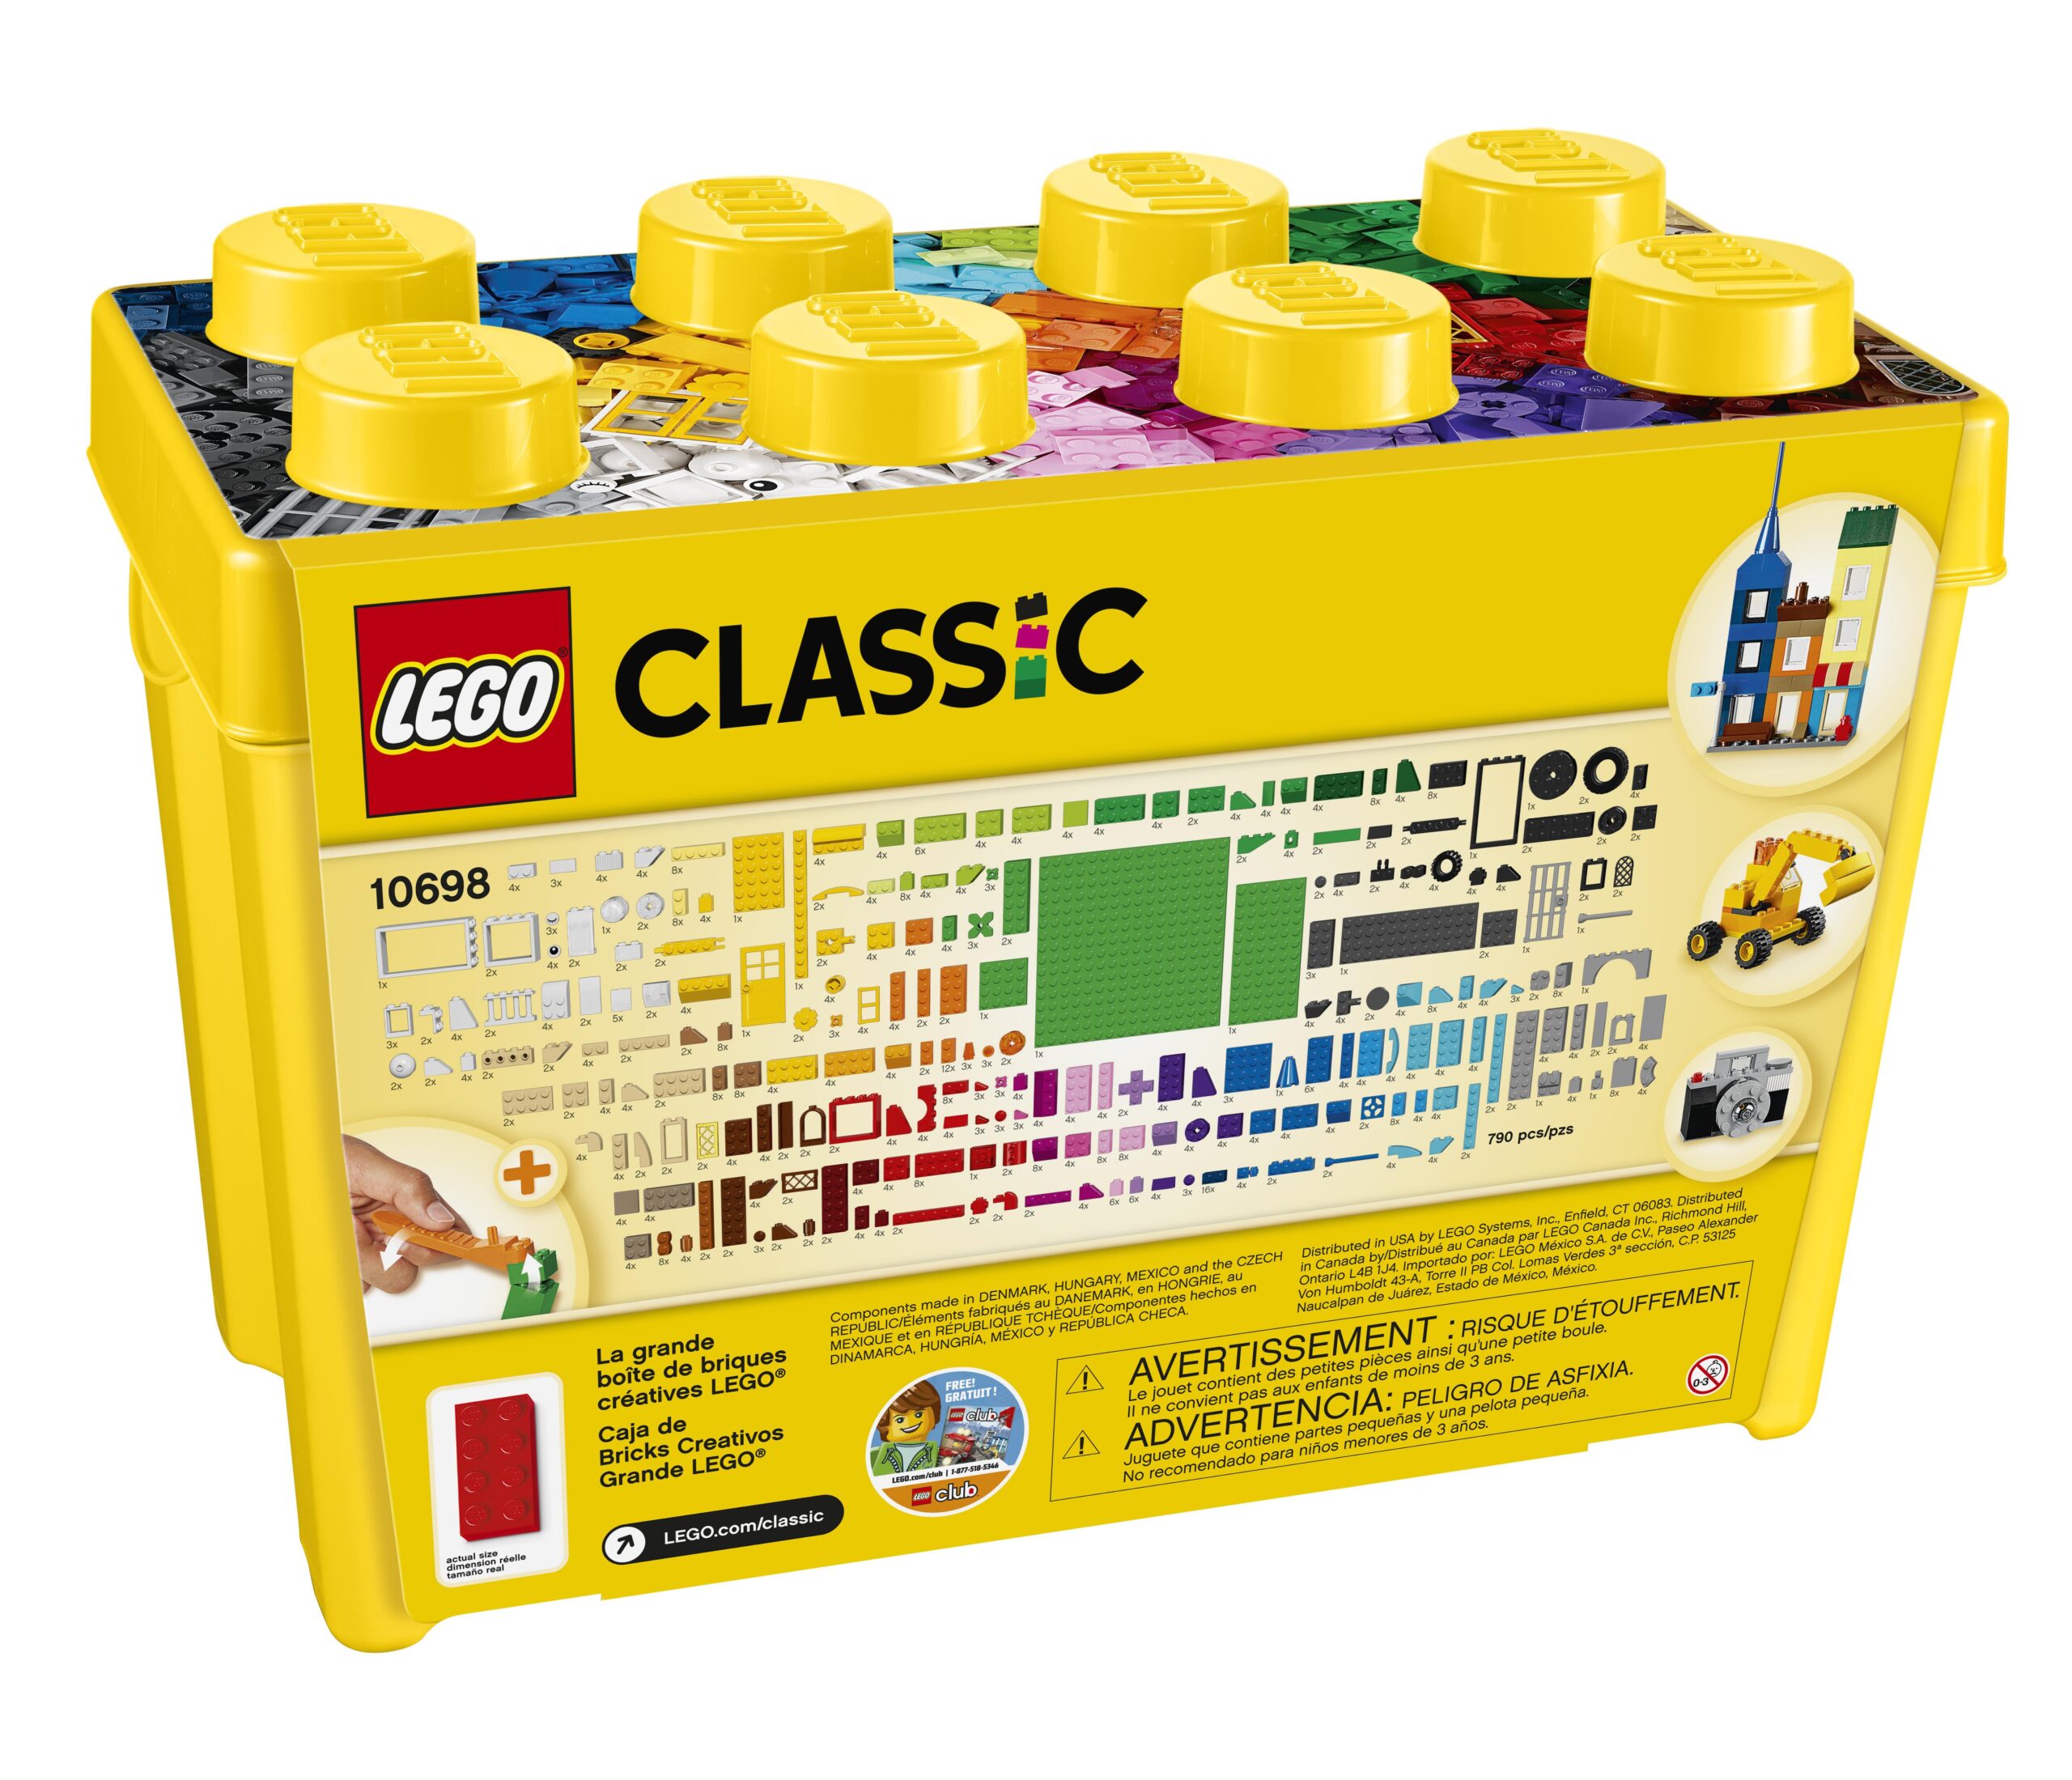 Lego classic 10698 scatola mattoncini creativi grande per costruire macchina fotografica, vespa e ruspa giocattolo - LEGO CLASSIC, Lego